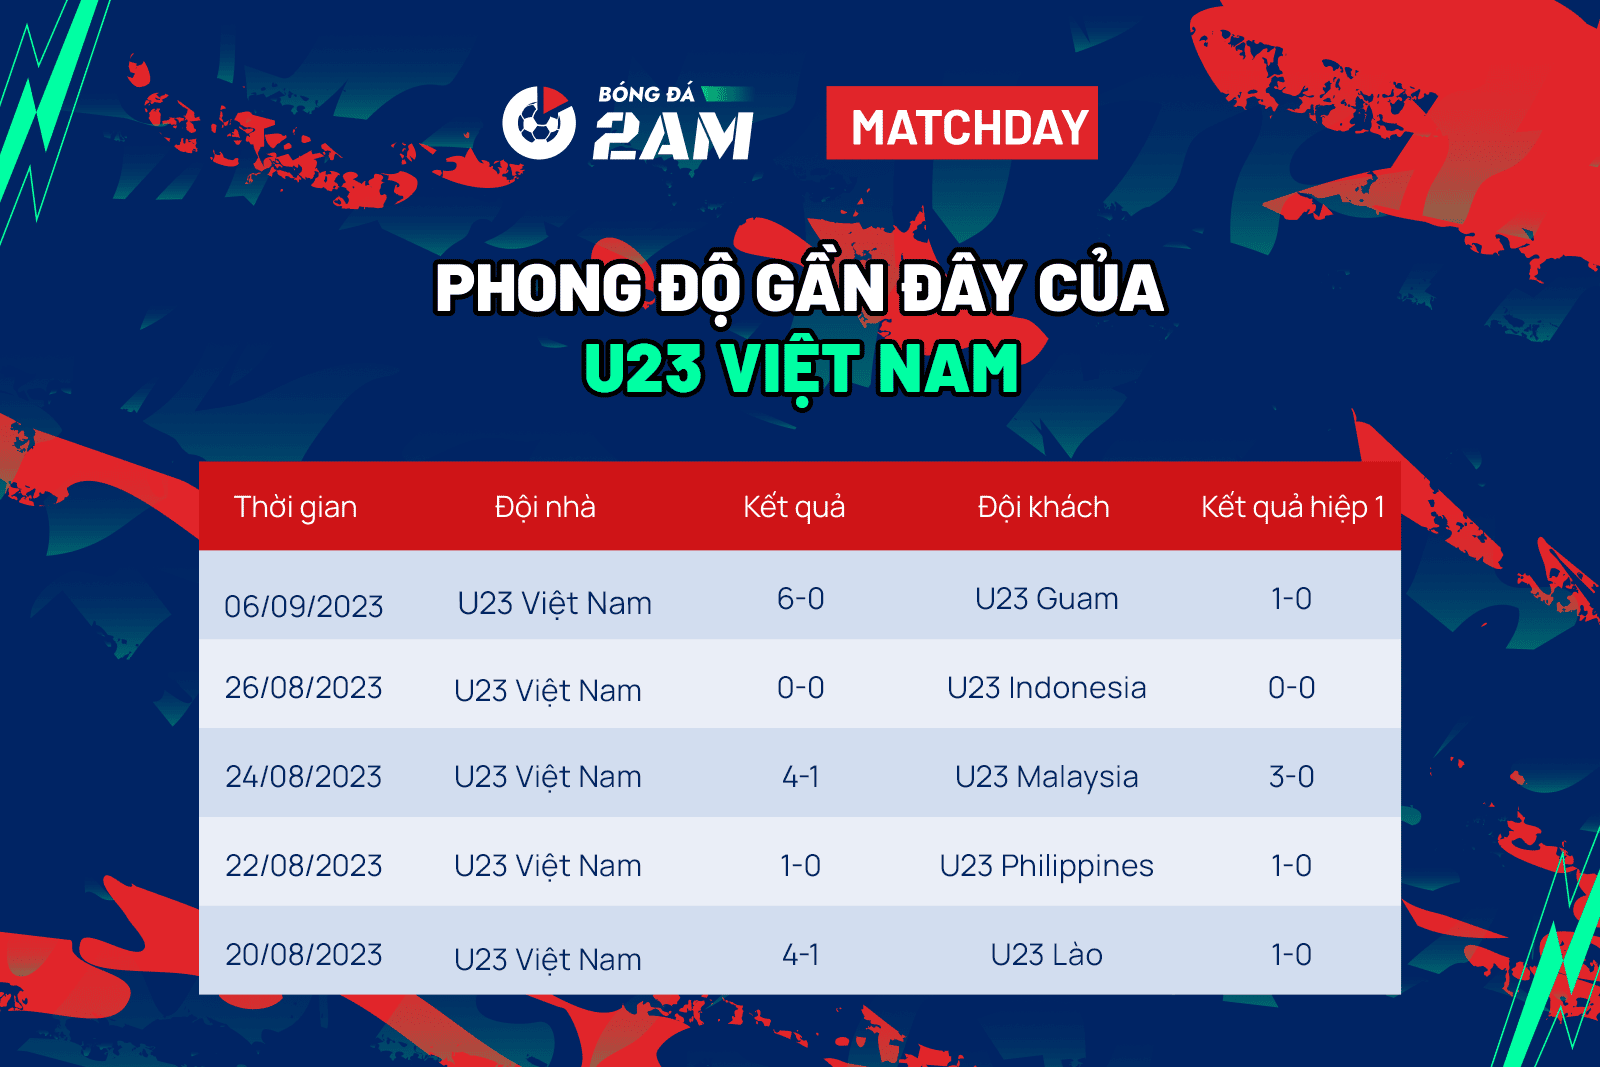 U23 Việt Nam vs U23 Yemen